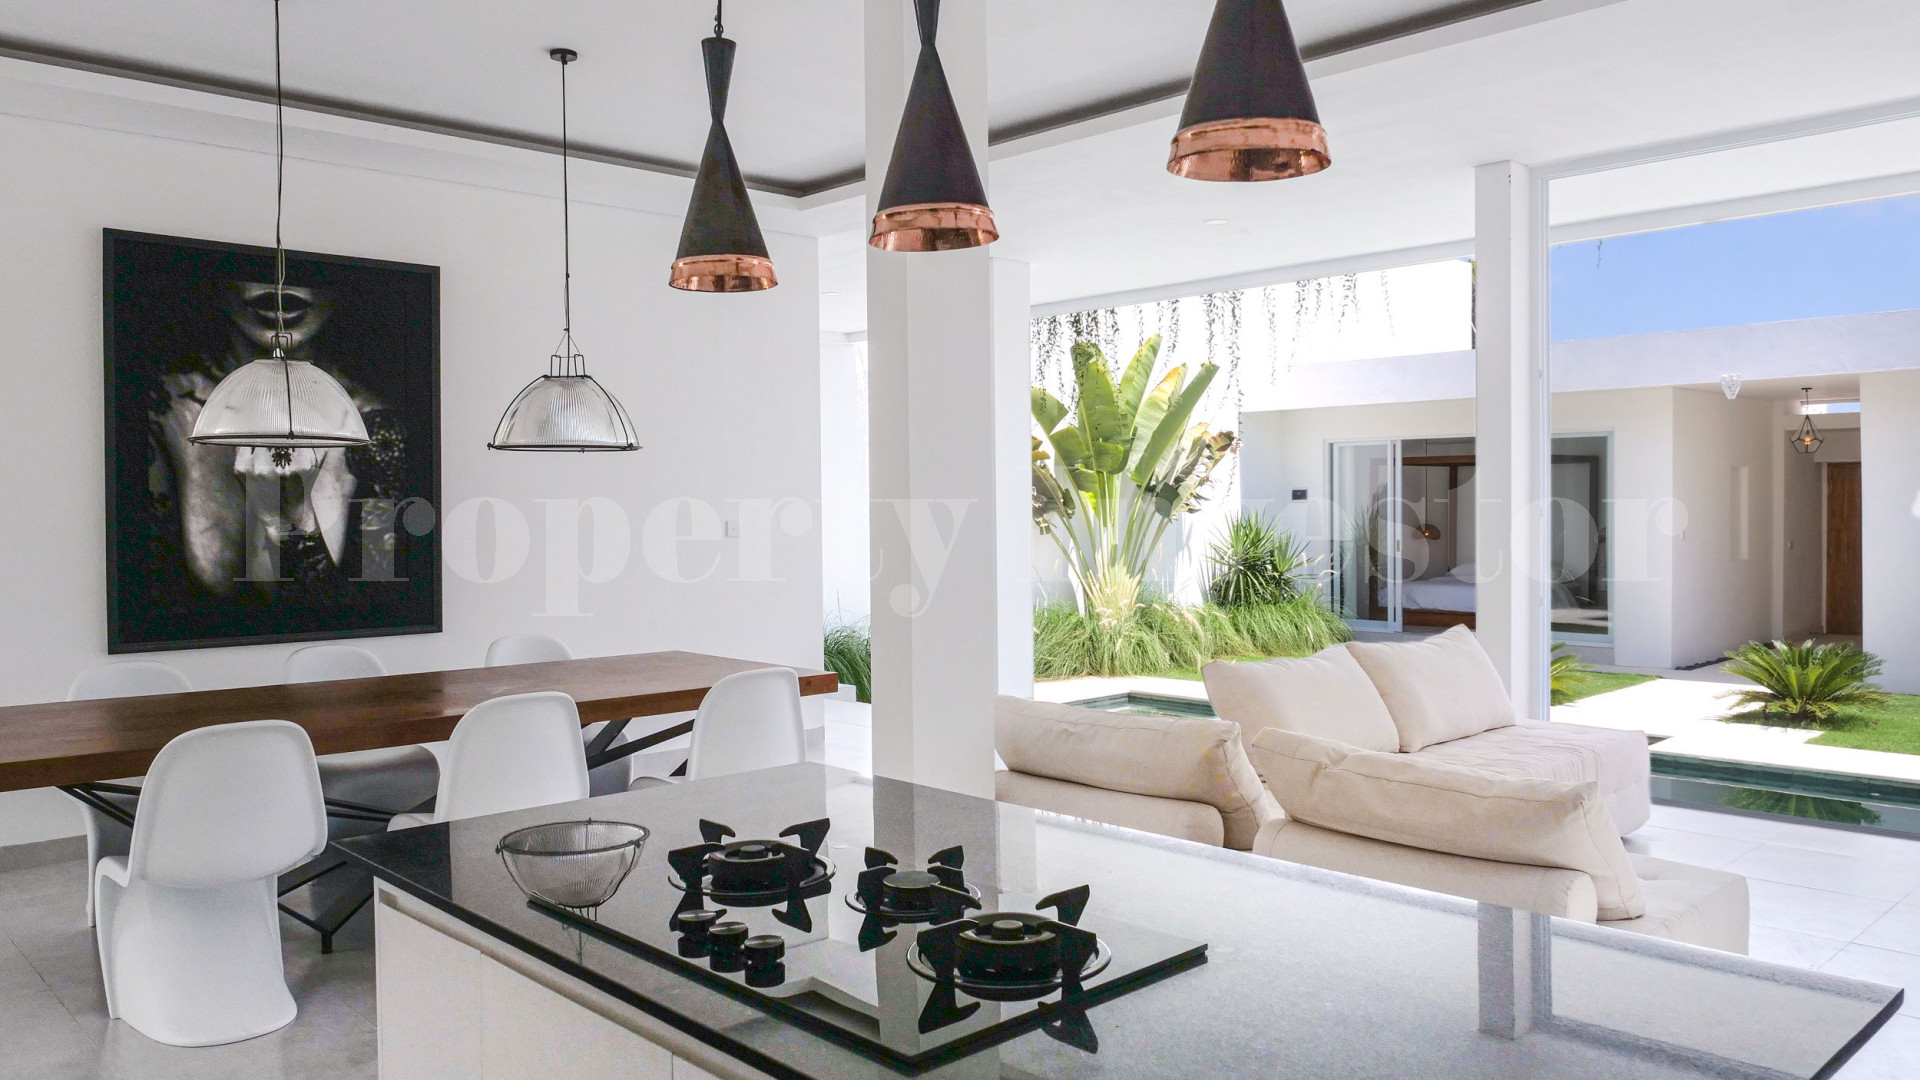 Brand New 3 Bedroom Luxury Contemporary Villa for Sale in Canggu-Padonan, Bali